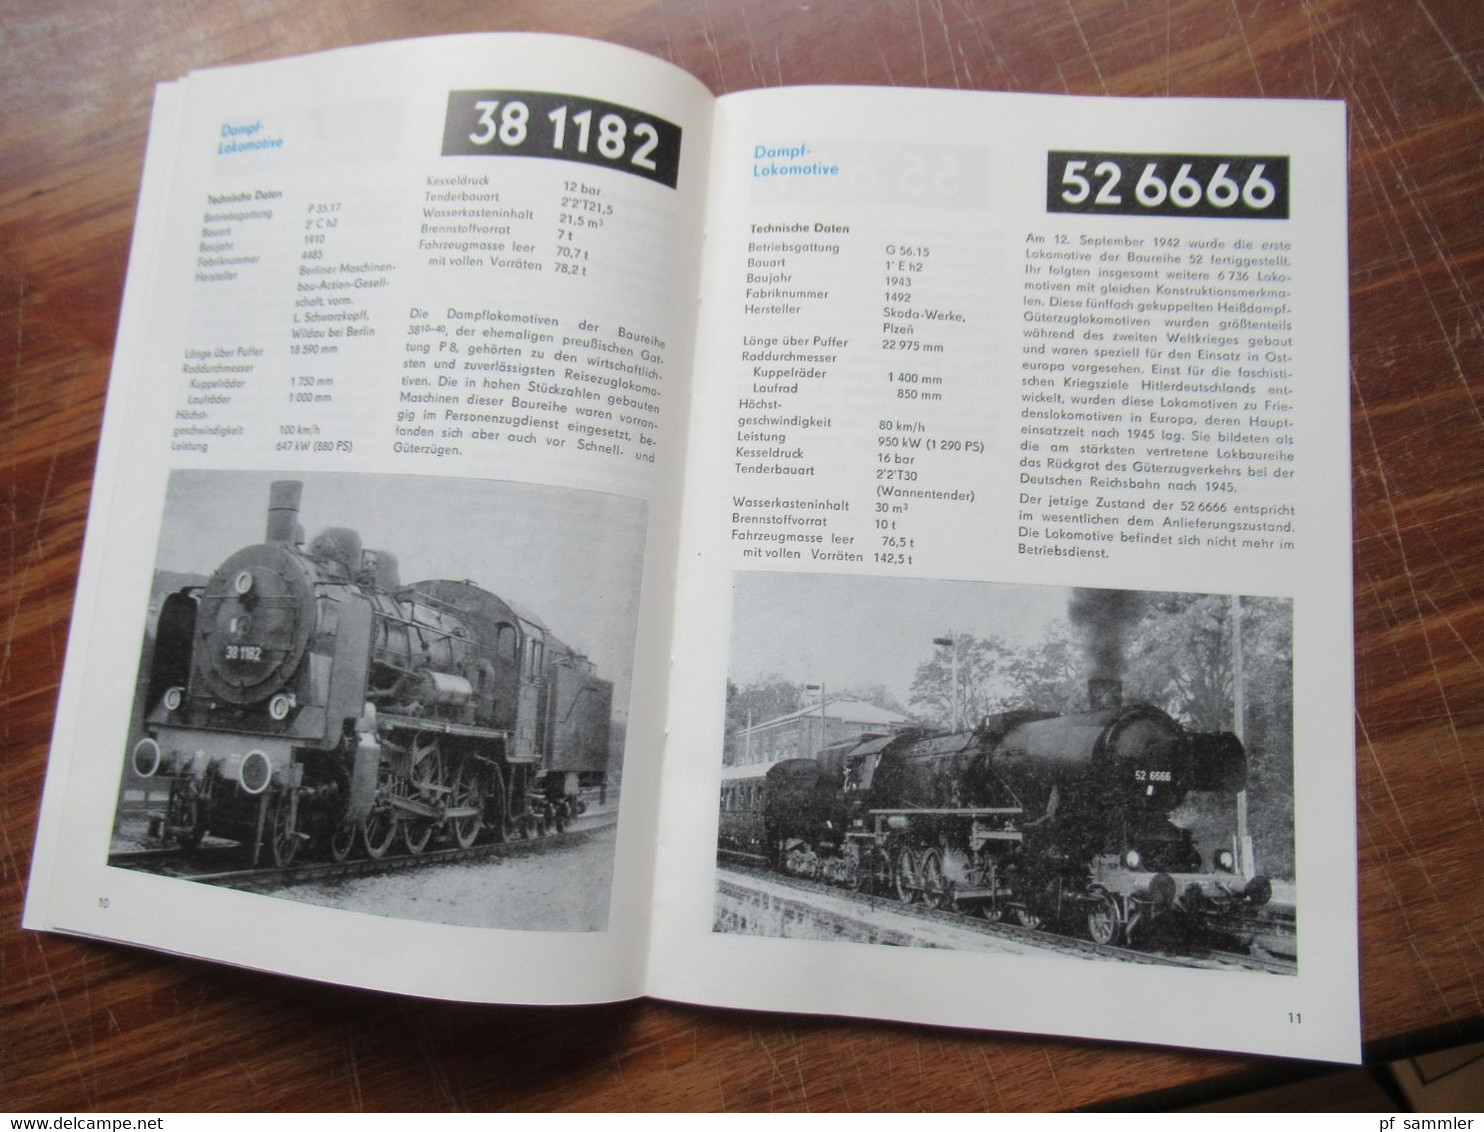 Katalog Eisenbahn-Fahrzeug-Ausstellung 17. - 25.9.1988 Bf Potsdam Stadt Deutscher Modelleisenbahn Verband der DDR